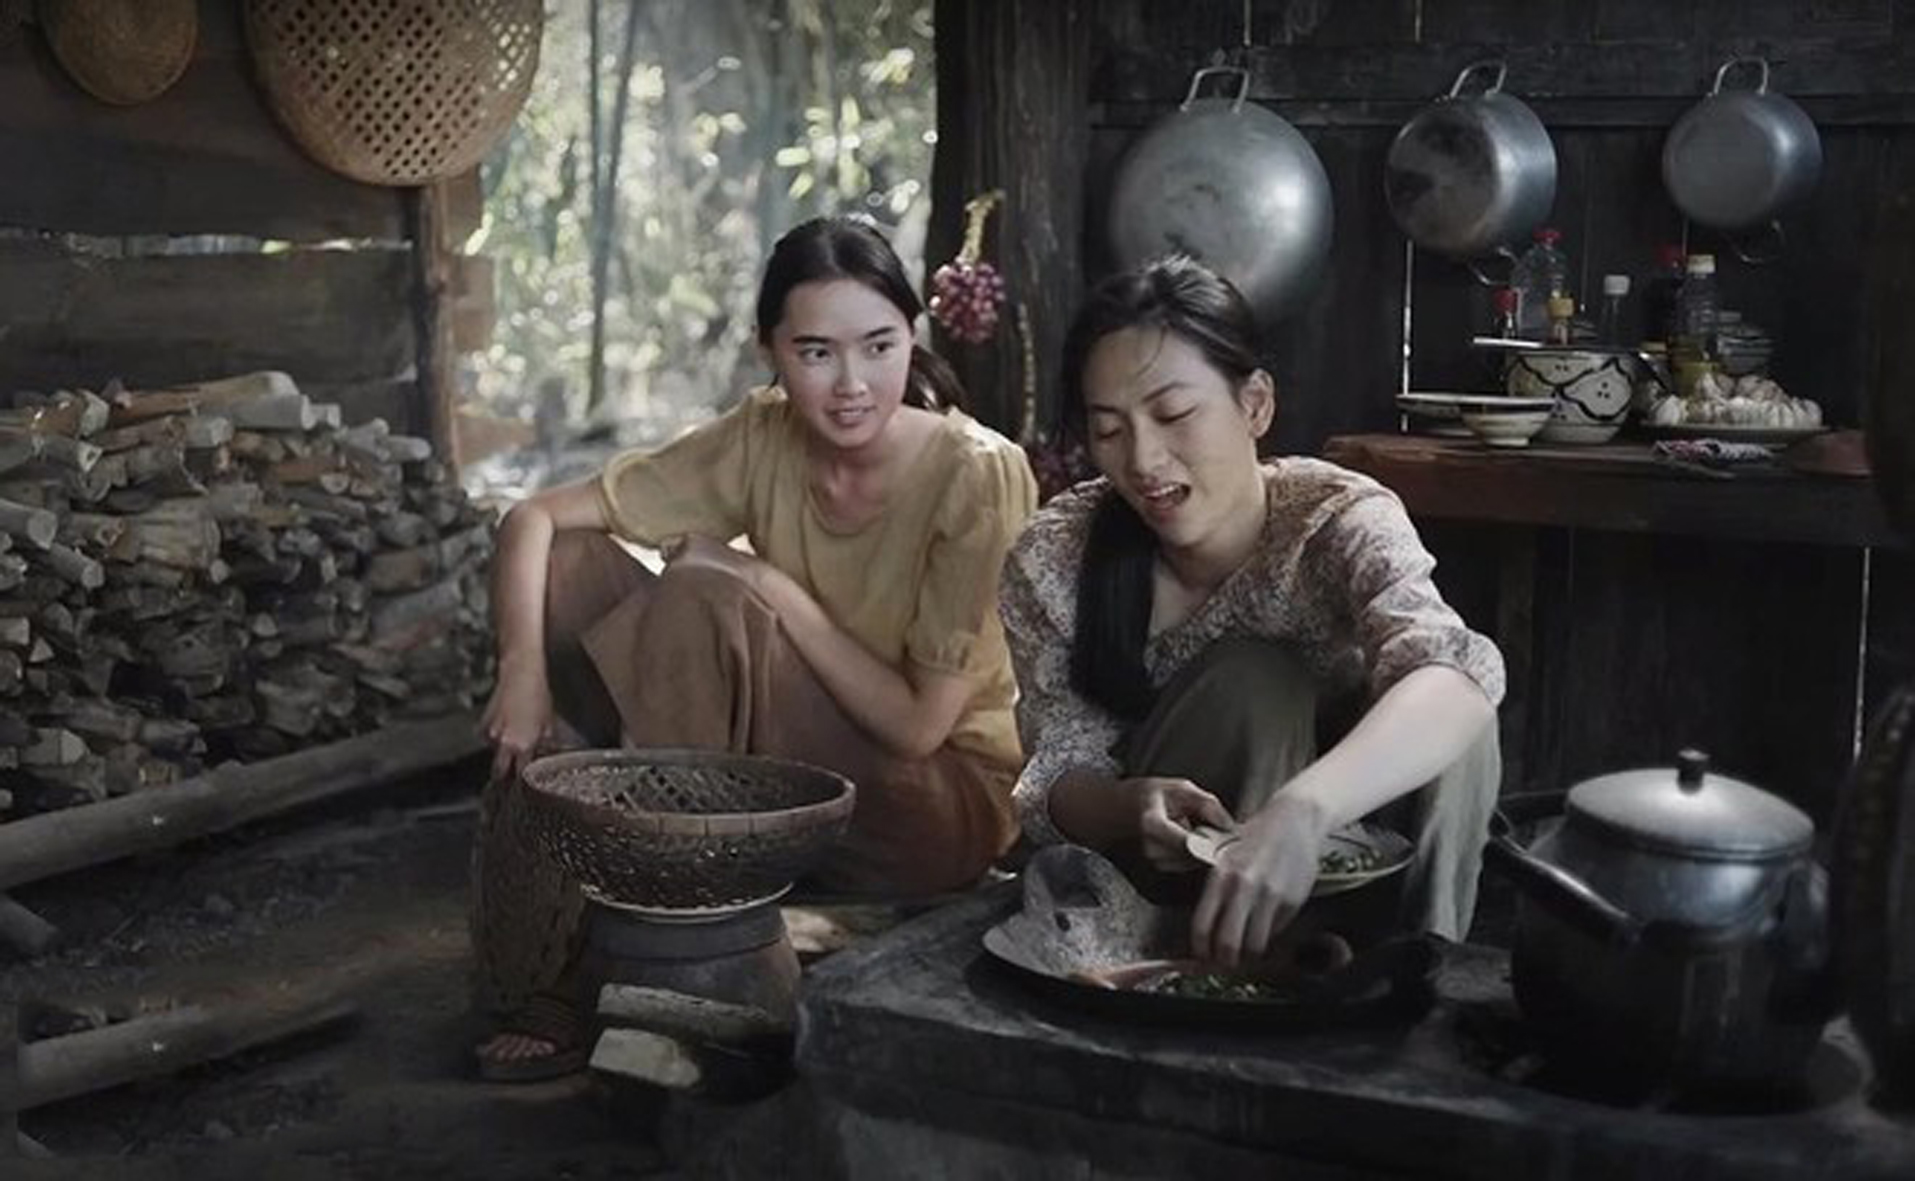 Phim xoay quanh chuyện tình yêu và gia đình  đầy khốn khổ của những người phụ nữ tại xóm Thơm Rơm